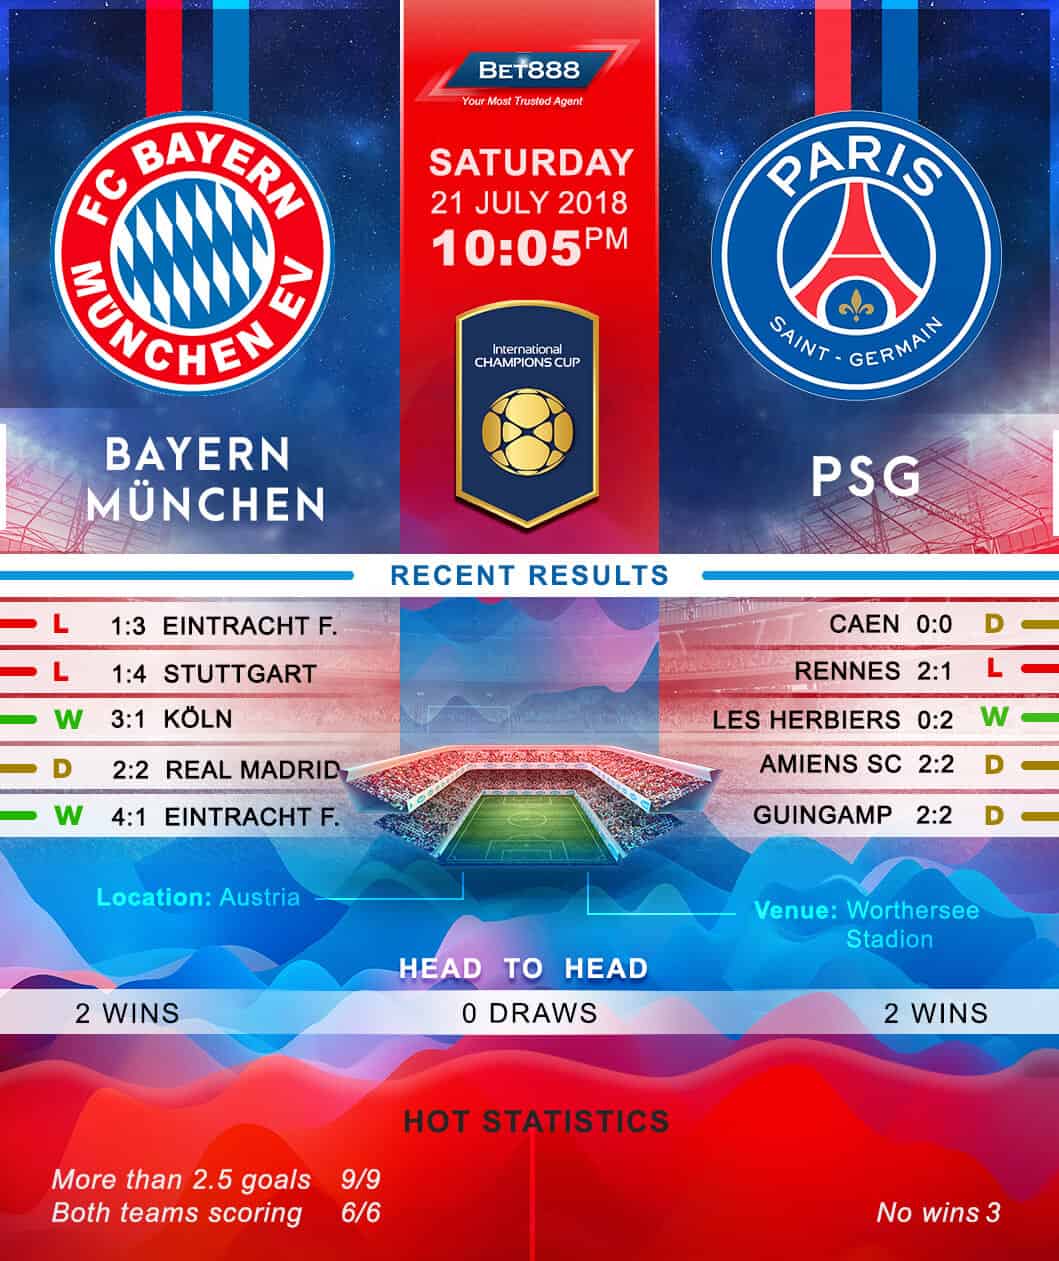 Bayern Munich vs Paris Saint-Germain 21/07/18